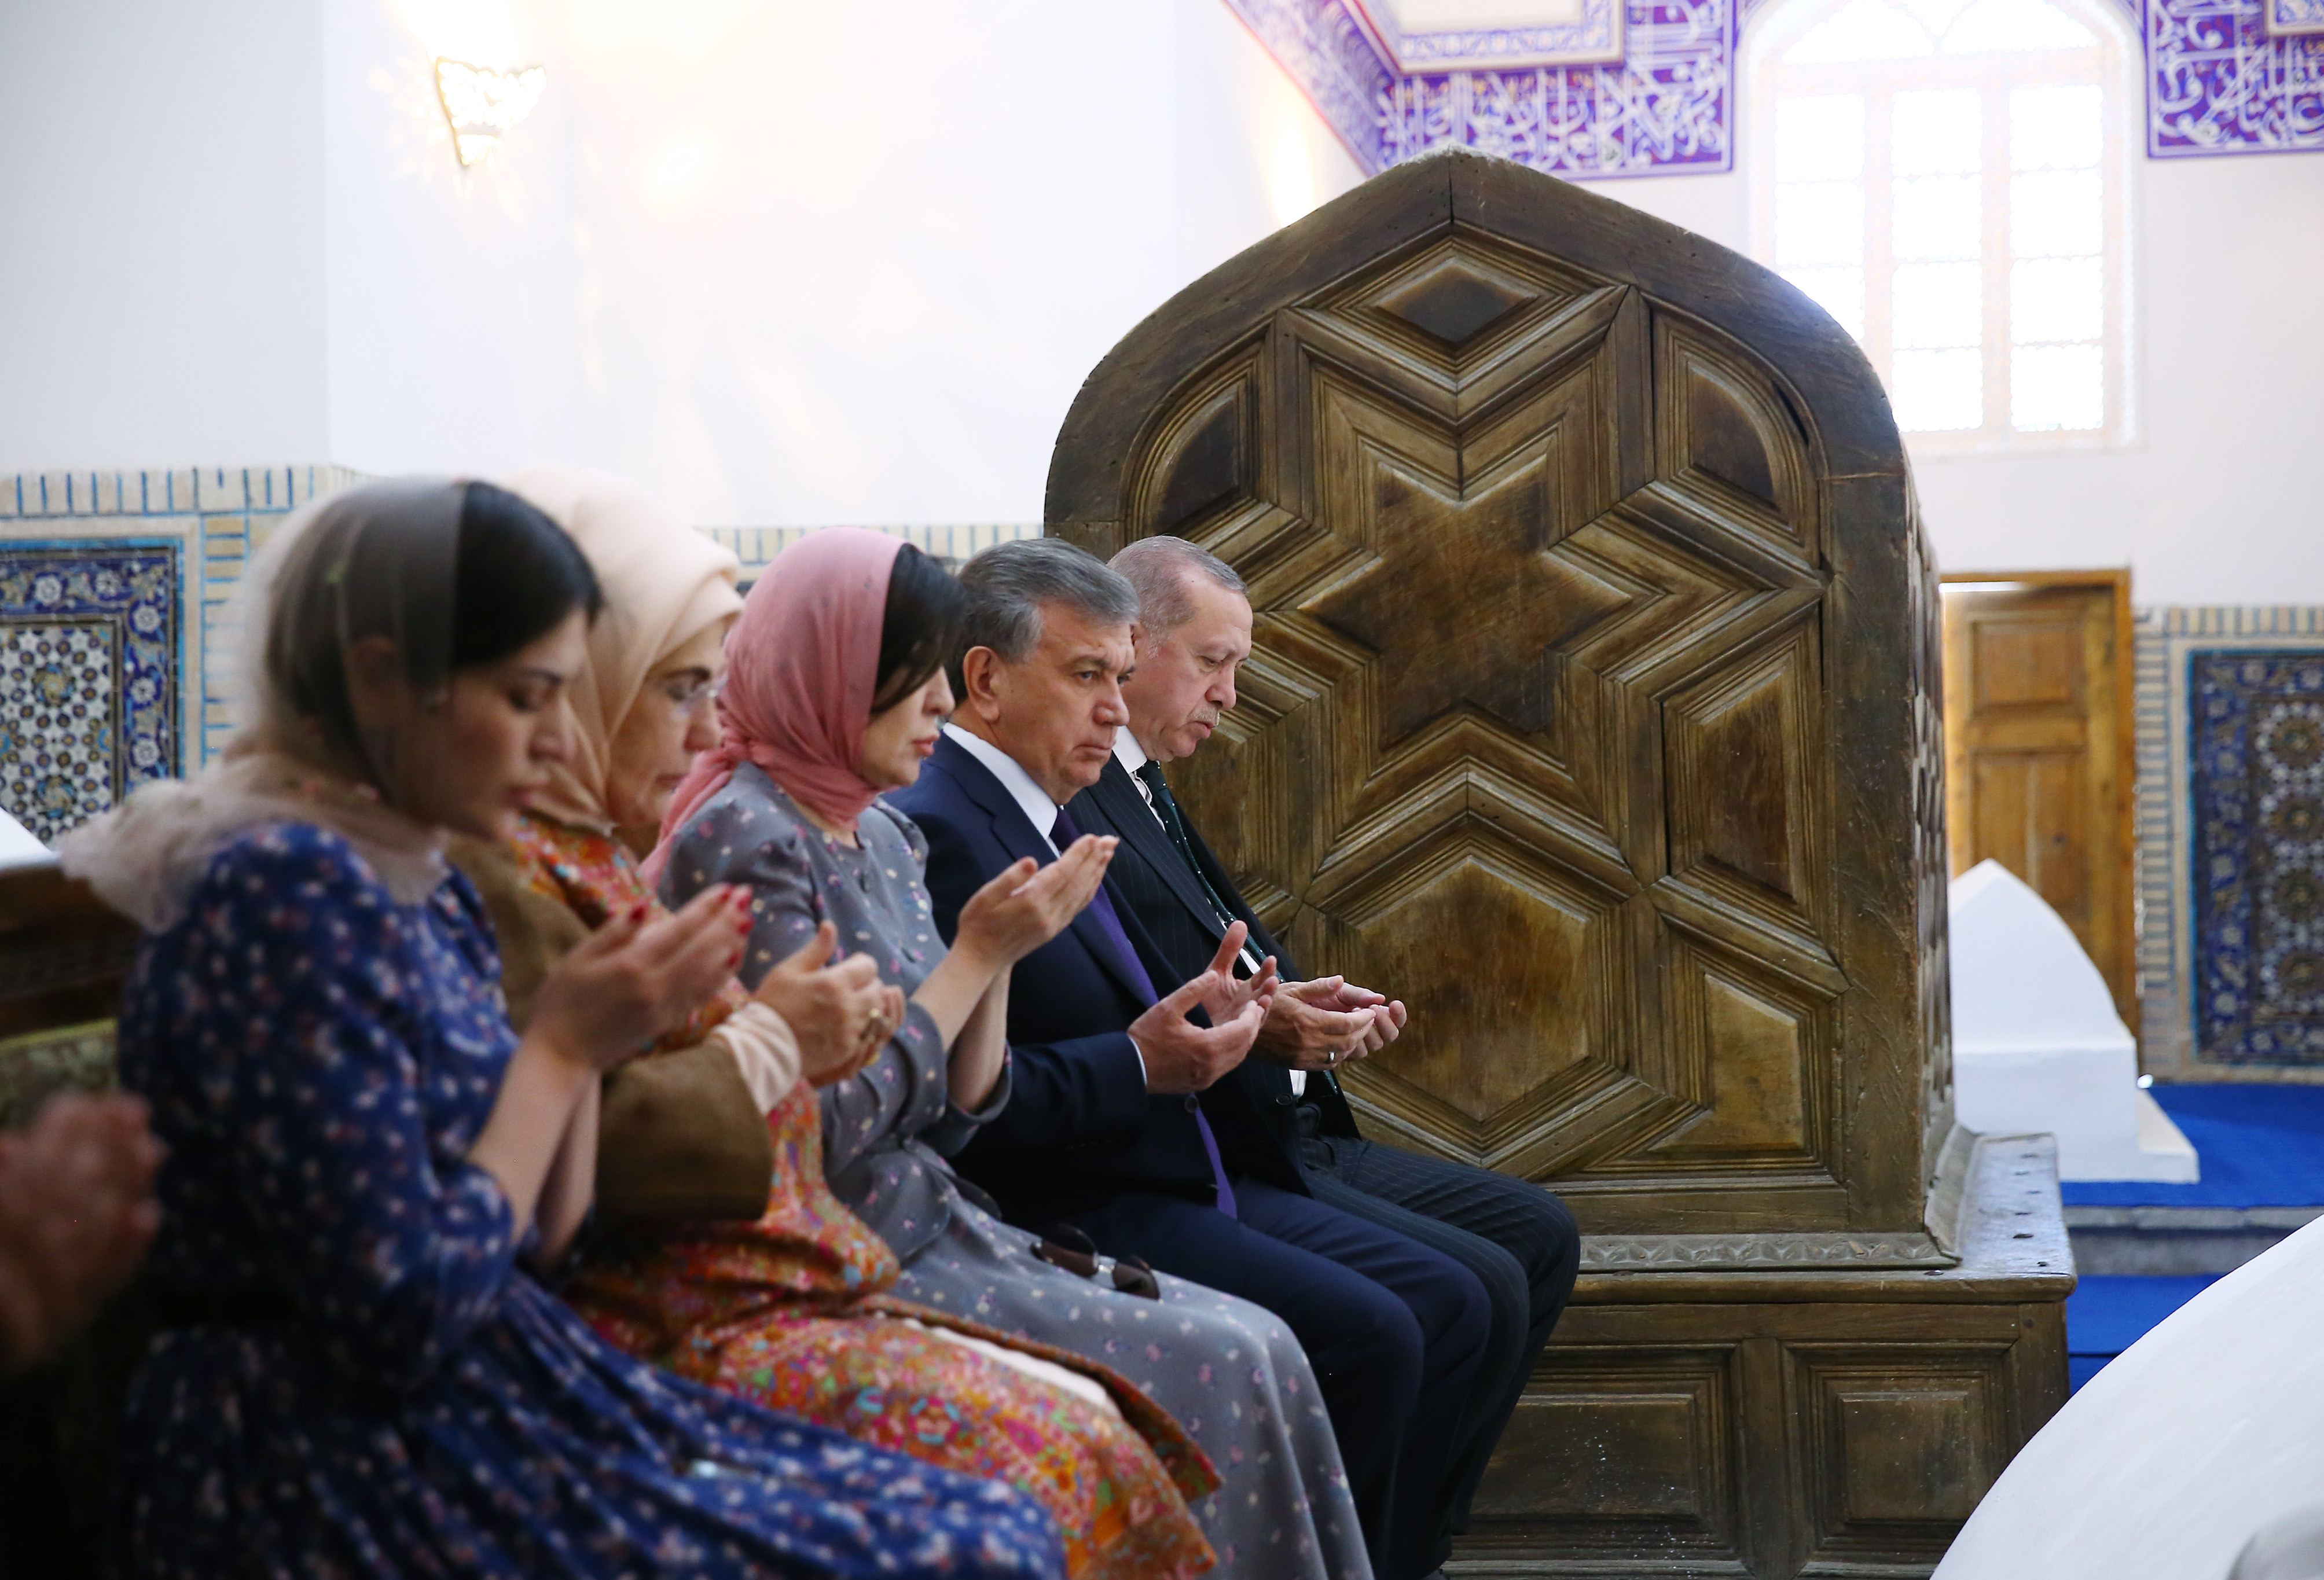 Cumhurbaşkanı Recep Tayyip Erdoğan, Özbekistan temasları sırasında Cumhurbaşkanı Şevket Mirziyoyev ile birlikte Seyyid Muhammed Bahauddin'in Buhara'da bulunan türbesini ziyaret ederek Kur'an okudu.